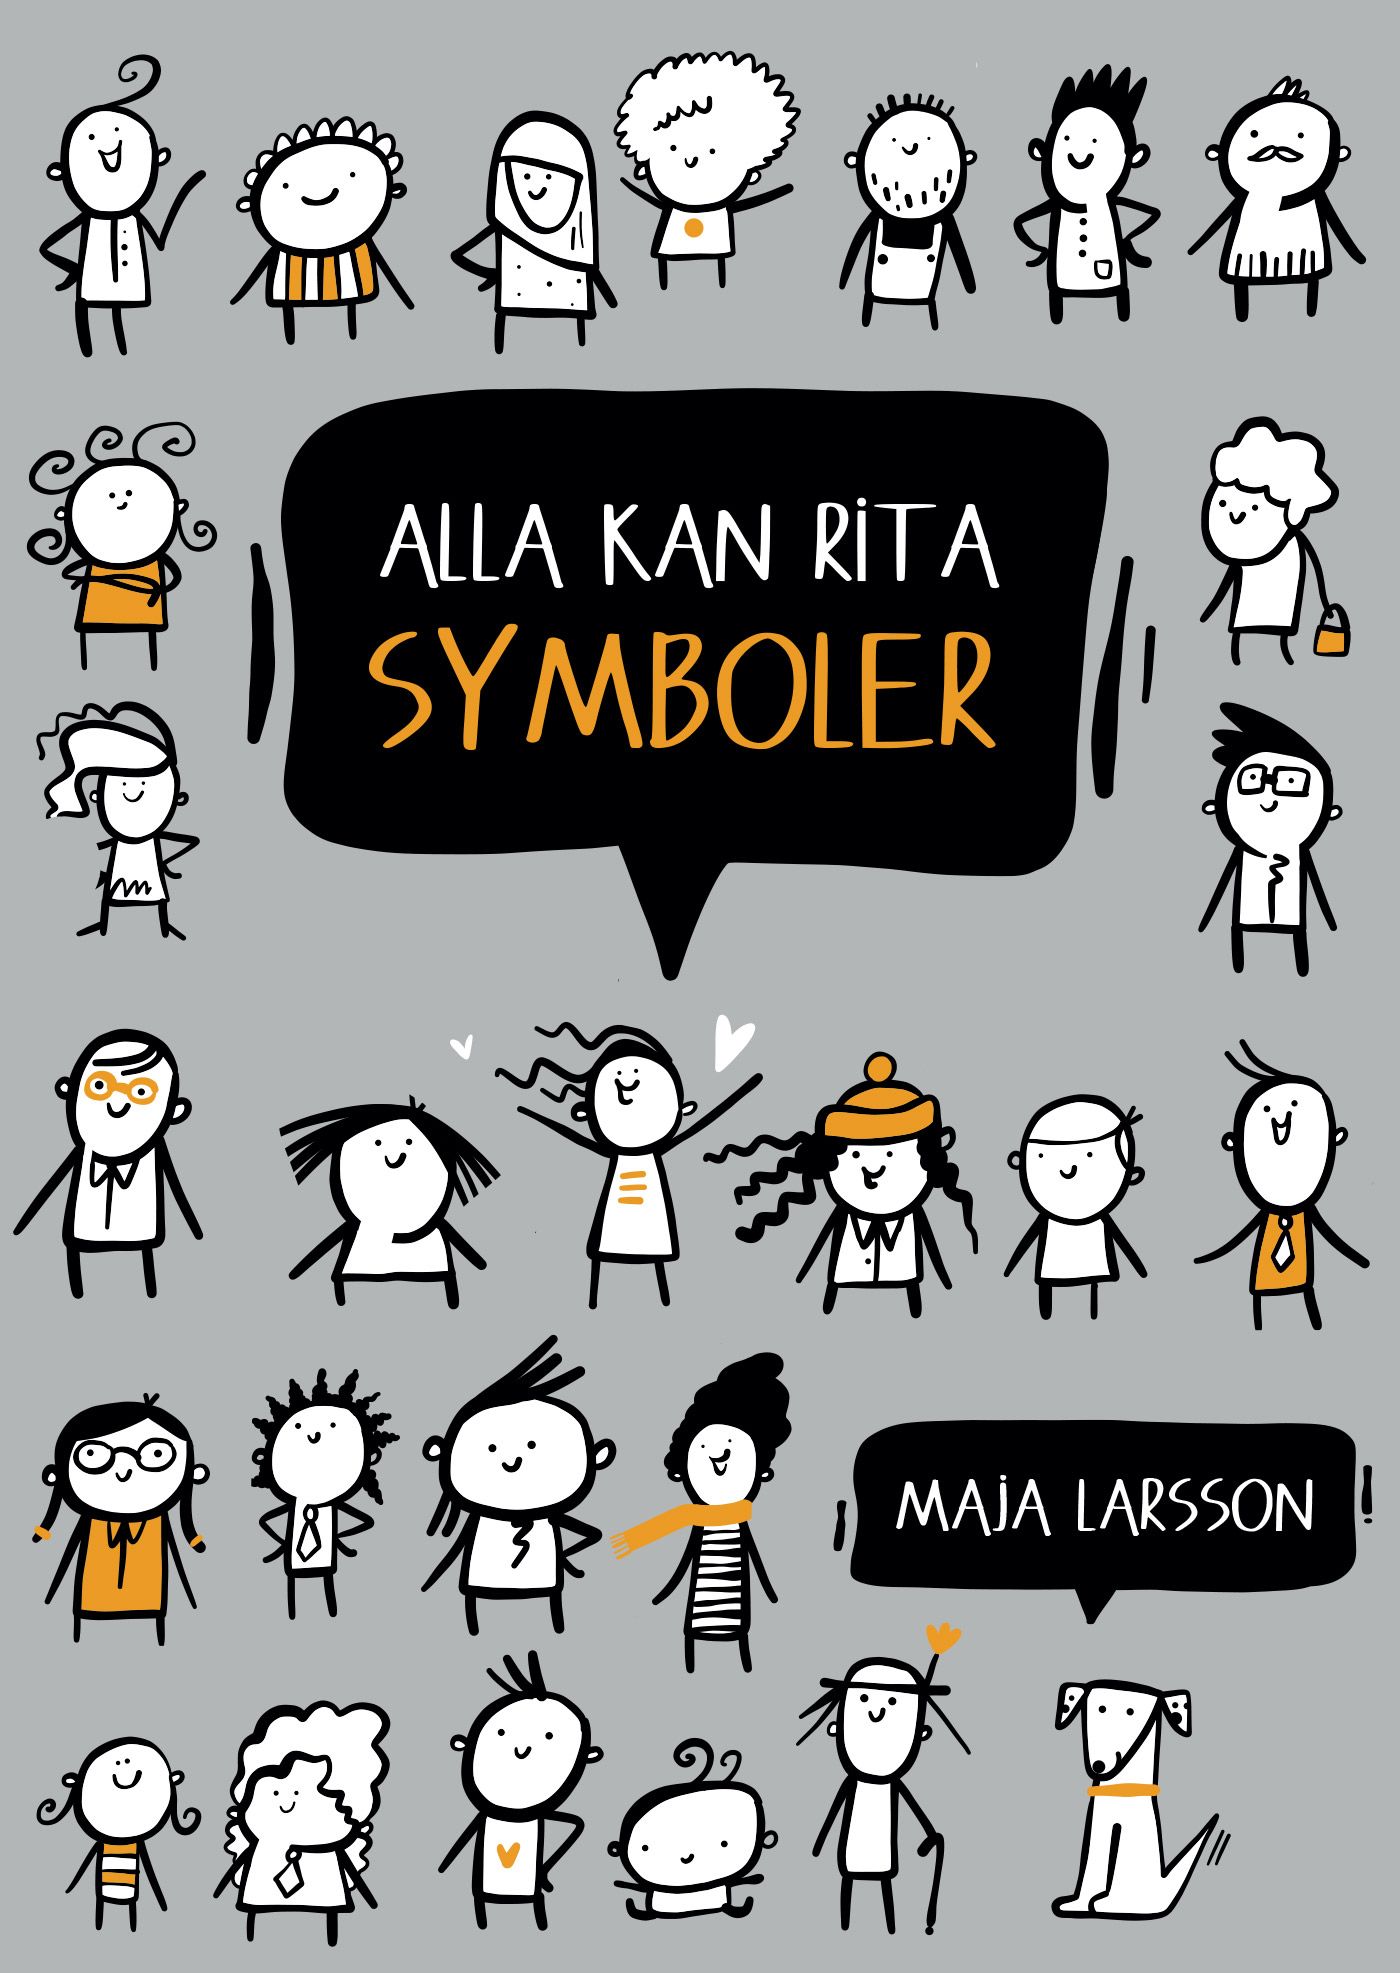 Alla kan rita symboler, e-bog af Maja Larsson